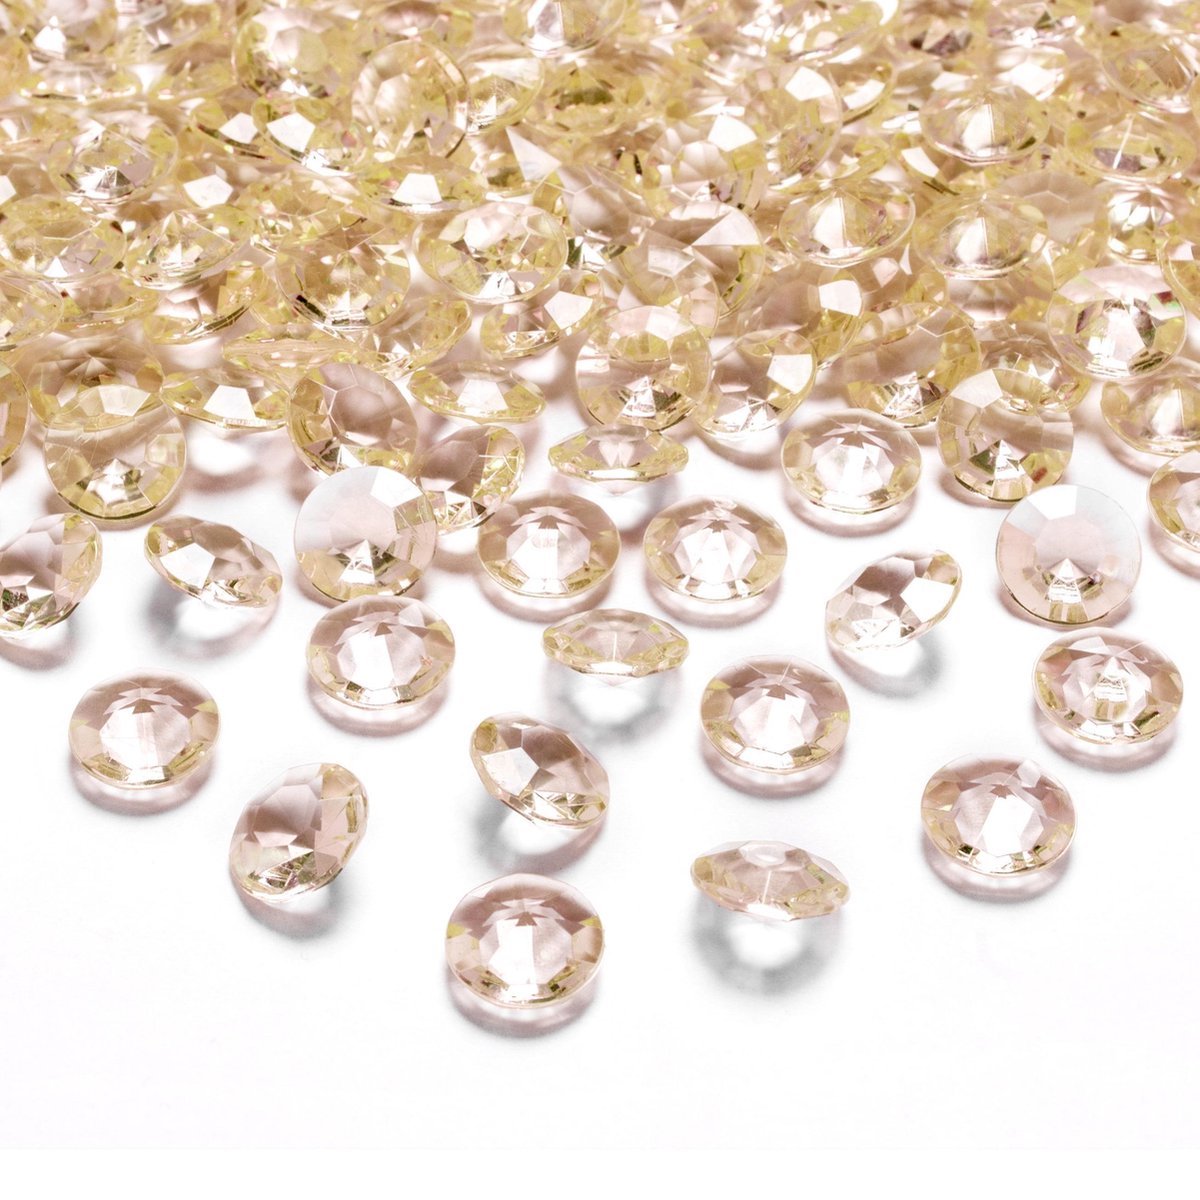 Afbeelding van product Merkloos / Sans marque  100x Hobby/decoratie gouden diamantjes/steentjes 12 mm/1,2 cm - Kleine kunststof edelstenen goud - Hobbymateriaal - DIY knutselen - Feestversiering/feestdecoratie plastic tafel